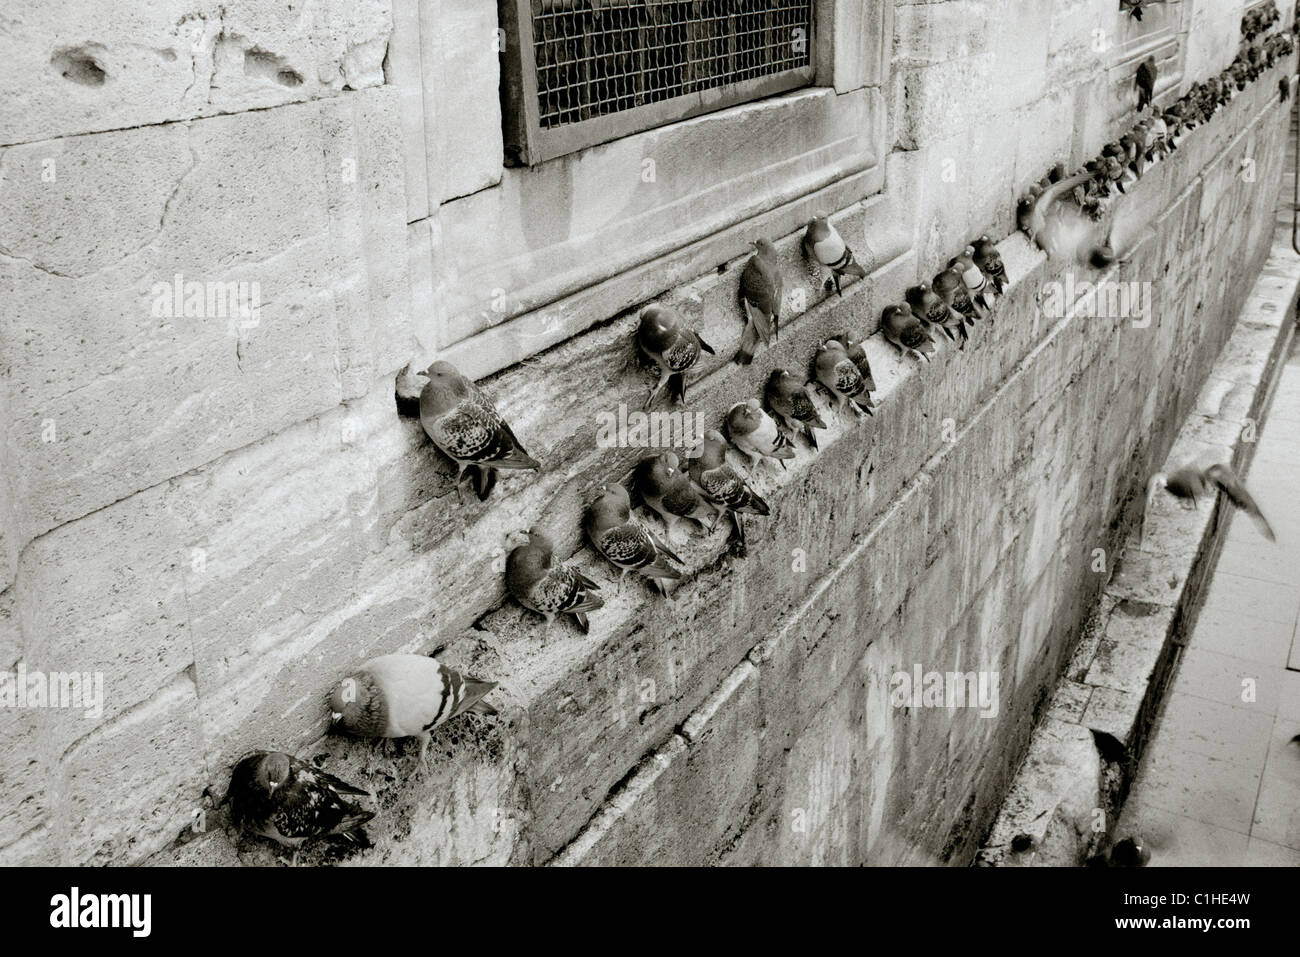 Dokumentarische Fotografie - Tauben in der Neuen Moschee in Istanbul in der Türkei im Nahen und Mittleren Osten. Taube Vogel Vögel Ungeziefer Stockfoto